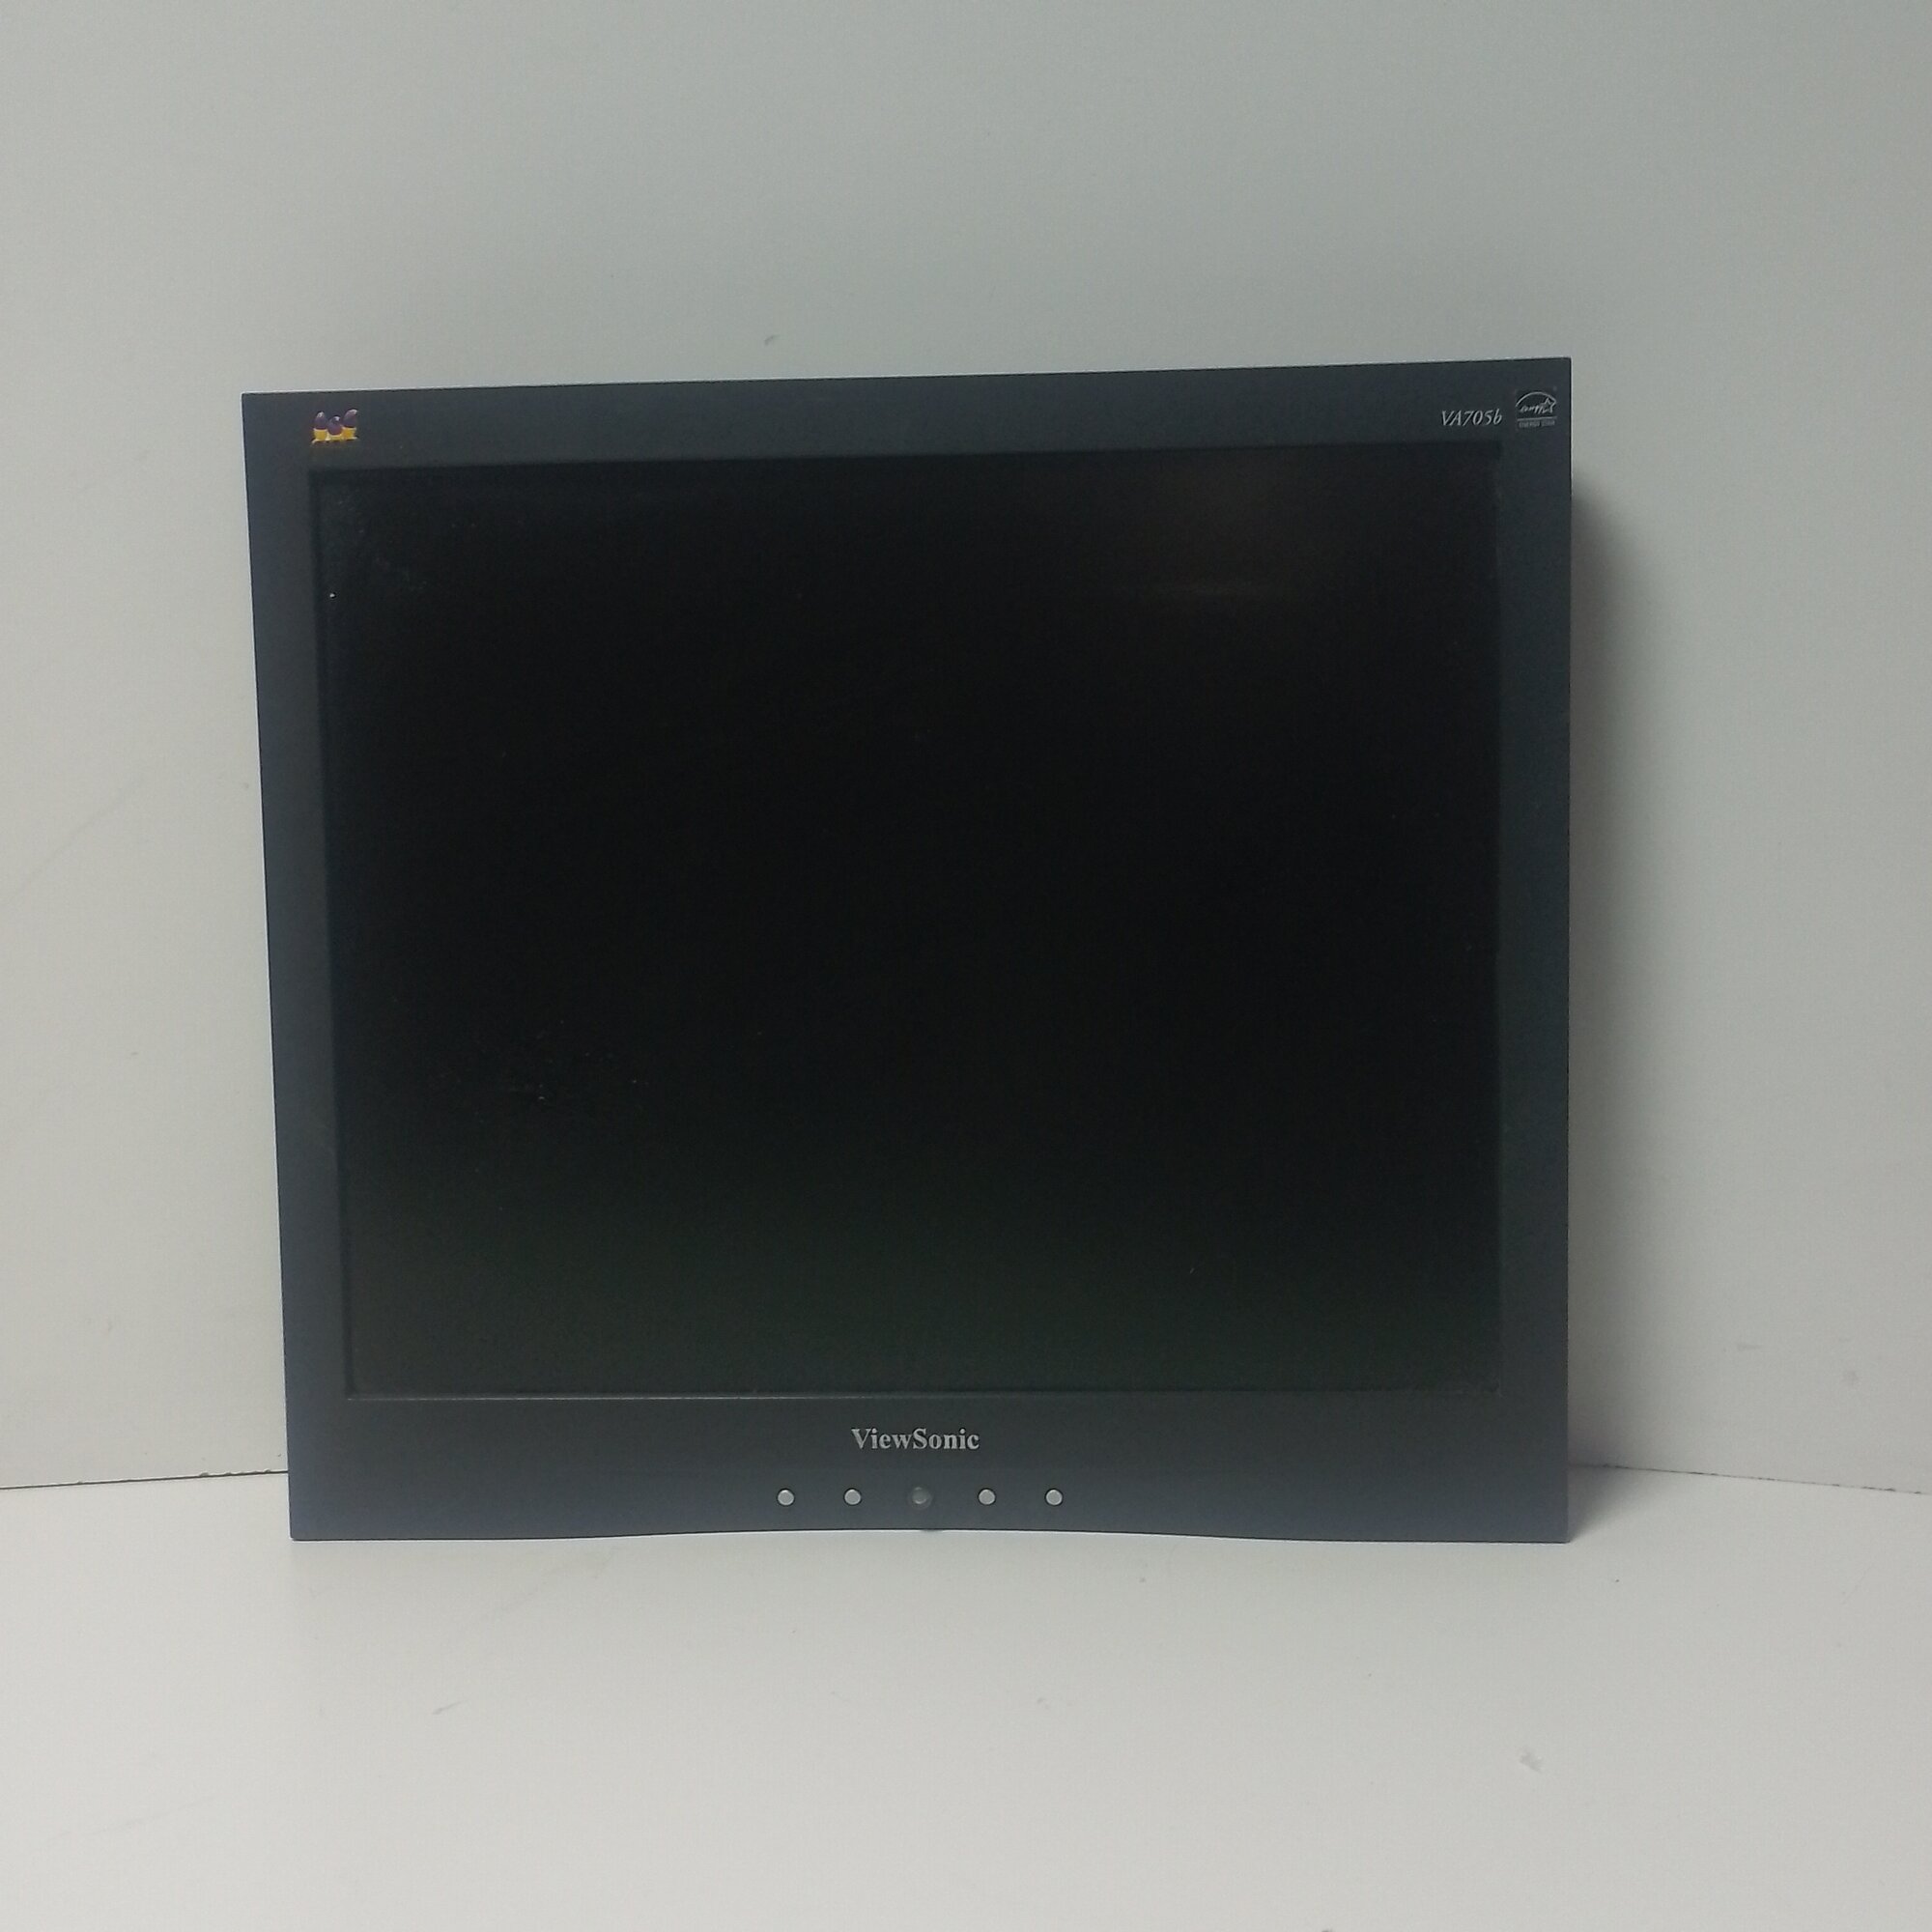 17" ЖК монитор Viewsonic VA705B (LCD, 1280x1024, D-Sub)